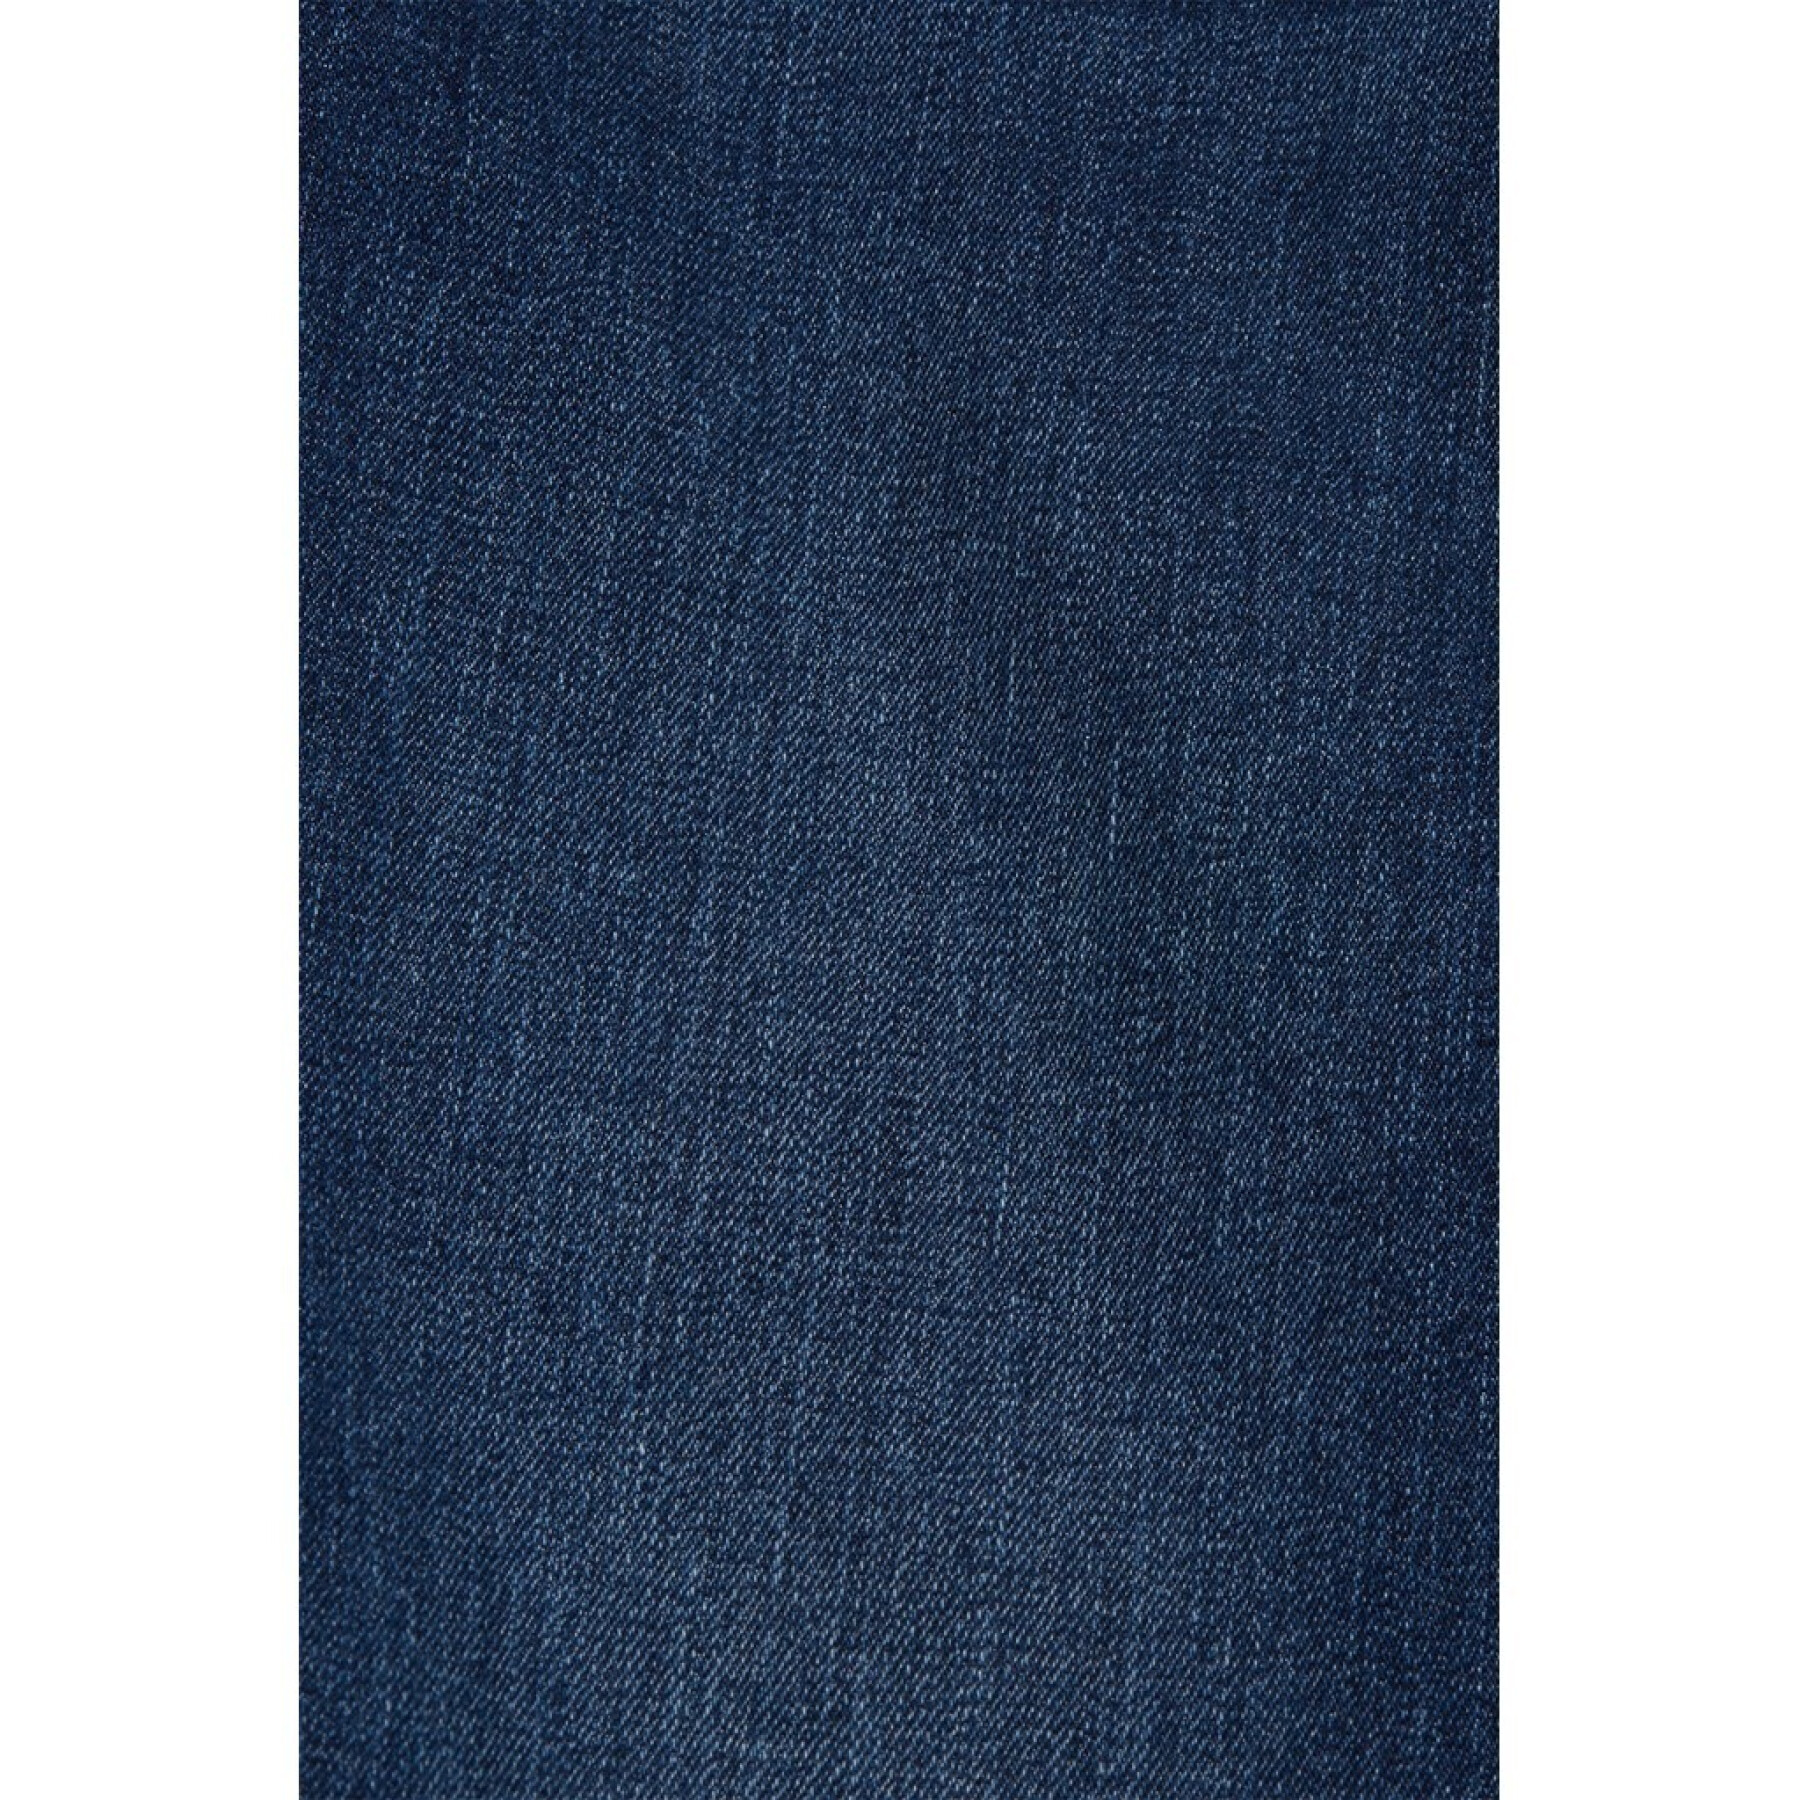 Women's jeans Esprit